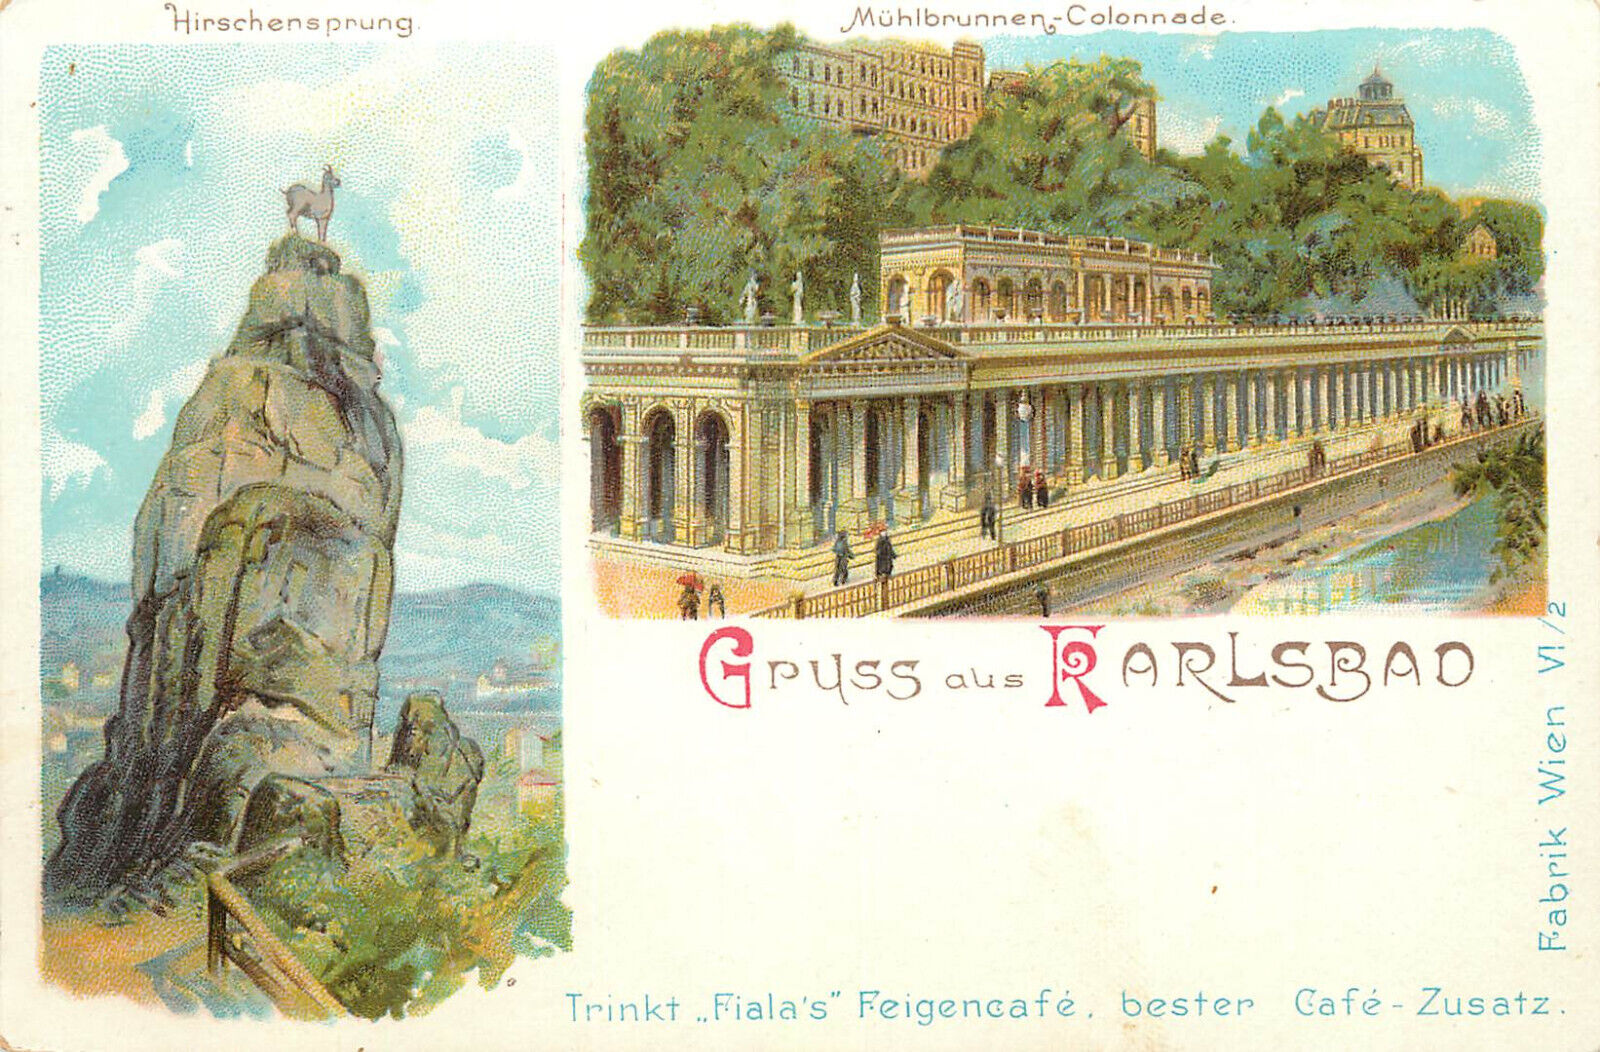 Postcard Trink Fialas Feigencafe Cafe zusatz Gruss Aus Karlsbad Muhlbrunnen